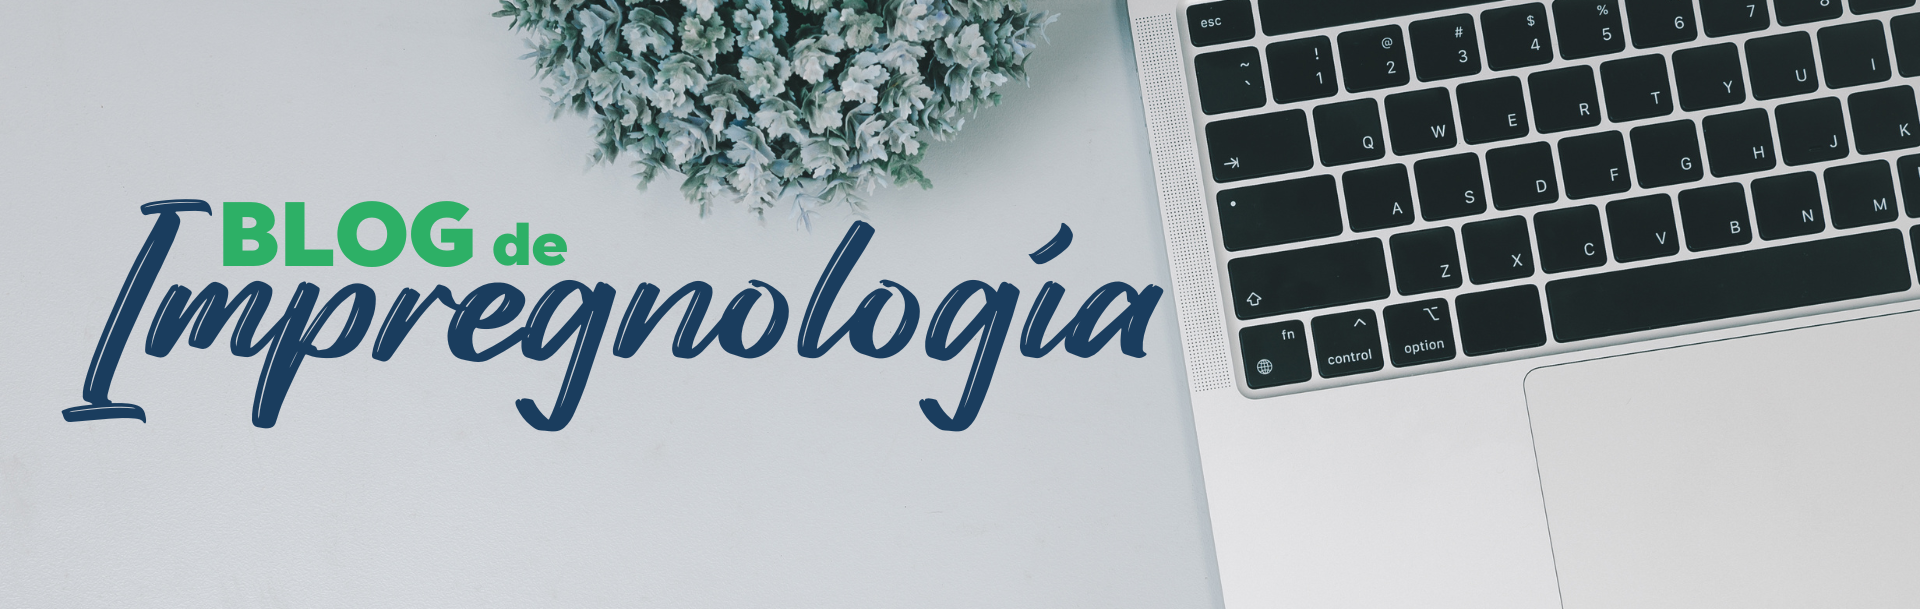 Blog de Impregnología - Escritos y reflexiones